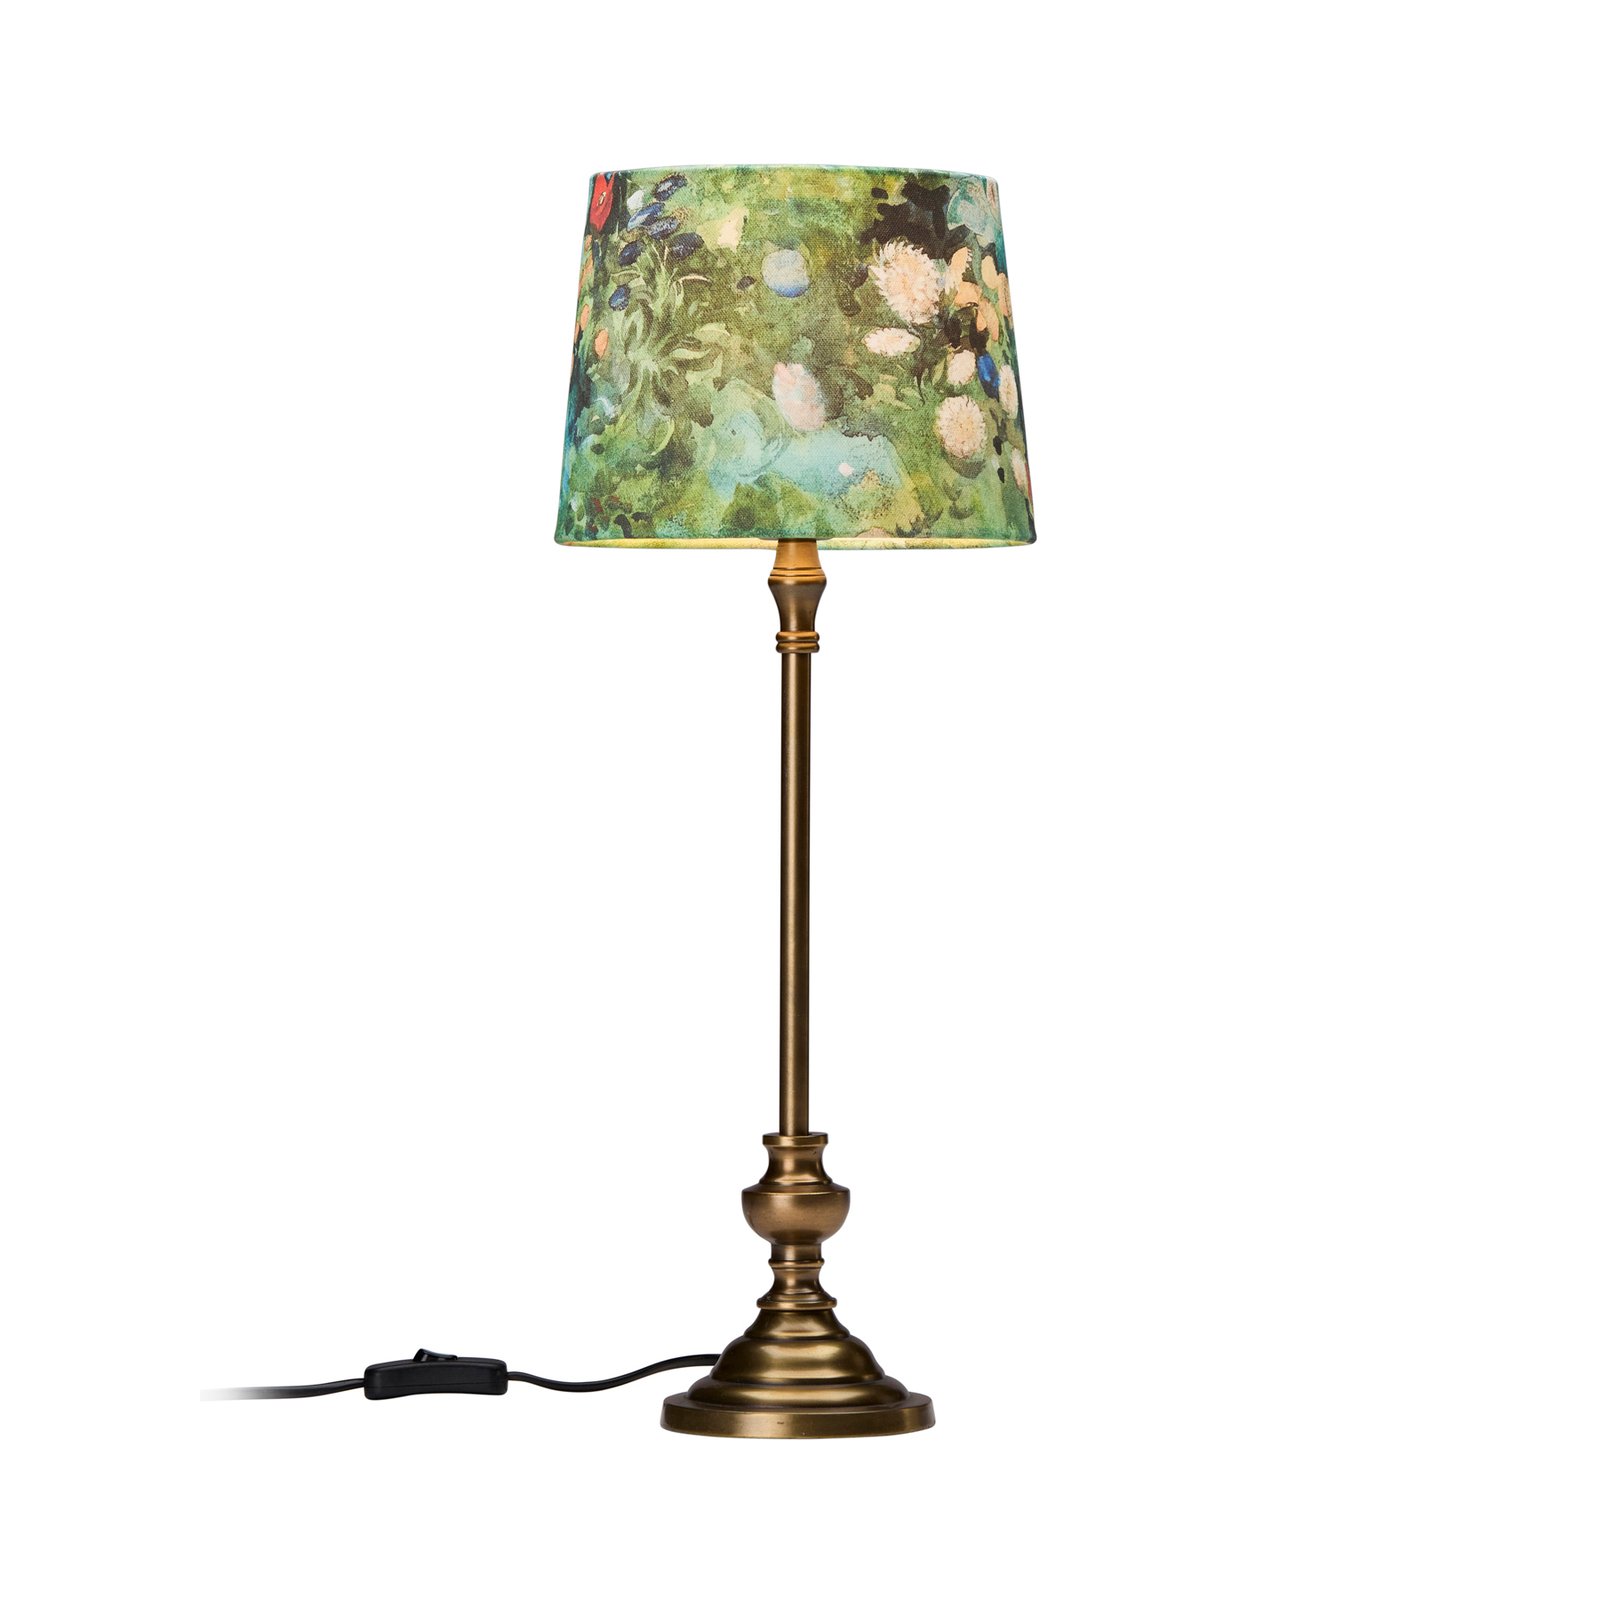 PR Home Andrea lampa stołowa mosiądz/zielona wzór